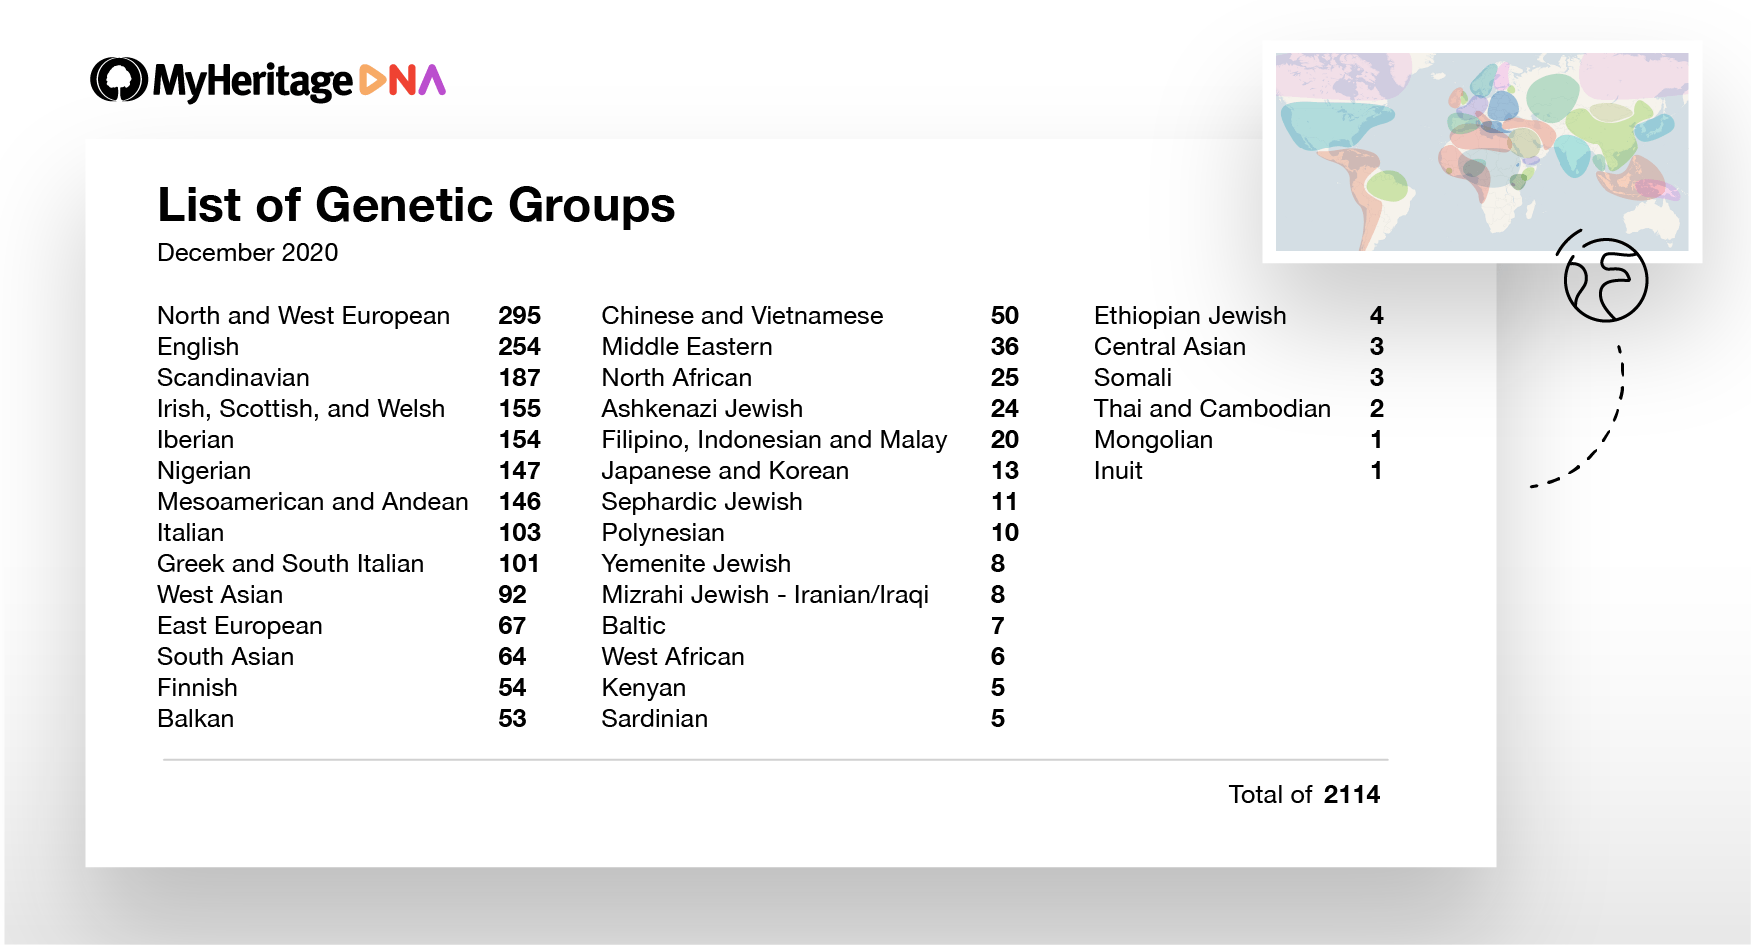 Lista do número de Grupos Genéticos disponíveis hoje em dia, abaixo de suas principais etnias de nível superior. Por exemplo, existem 103 Grupos Genéticos que são predominantemente Italianos e 54 Grupos Genéticos que são Finlandeses (Clique para ampliar)